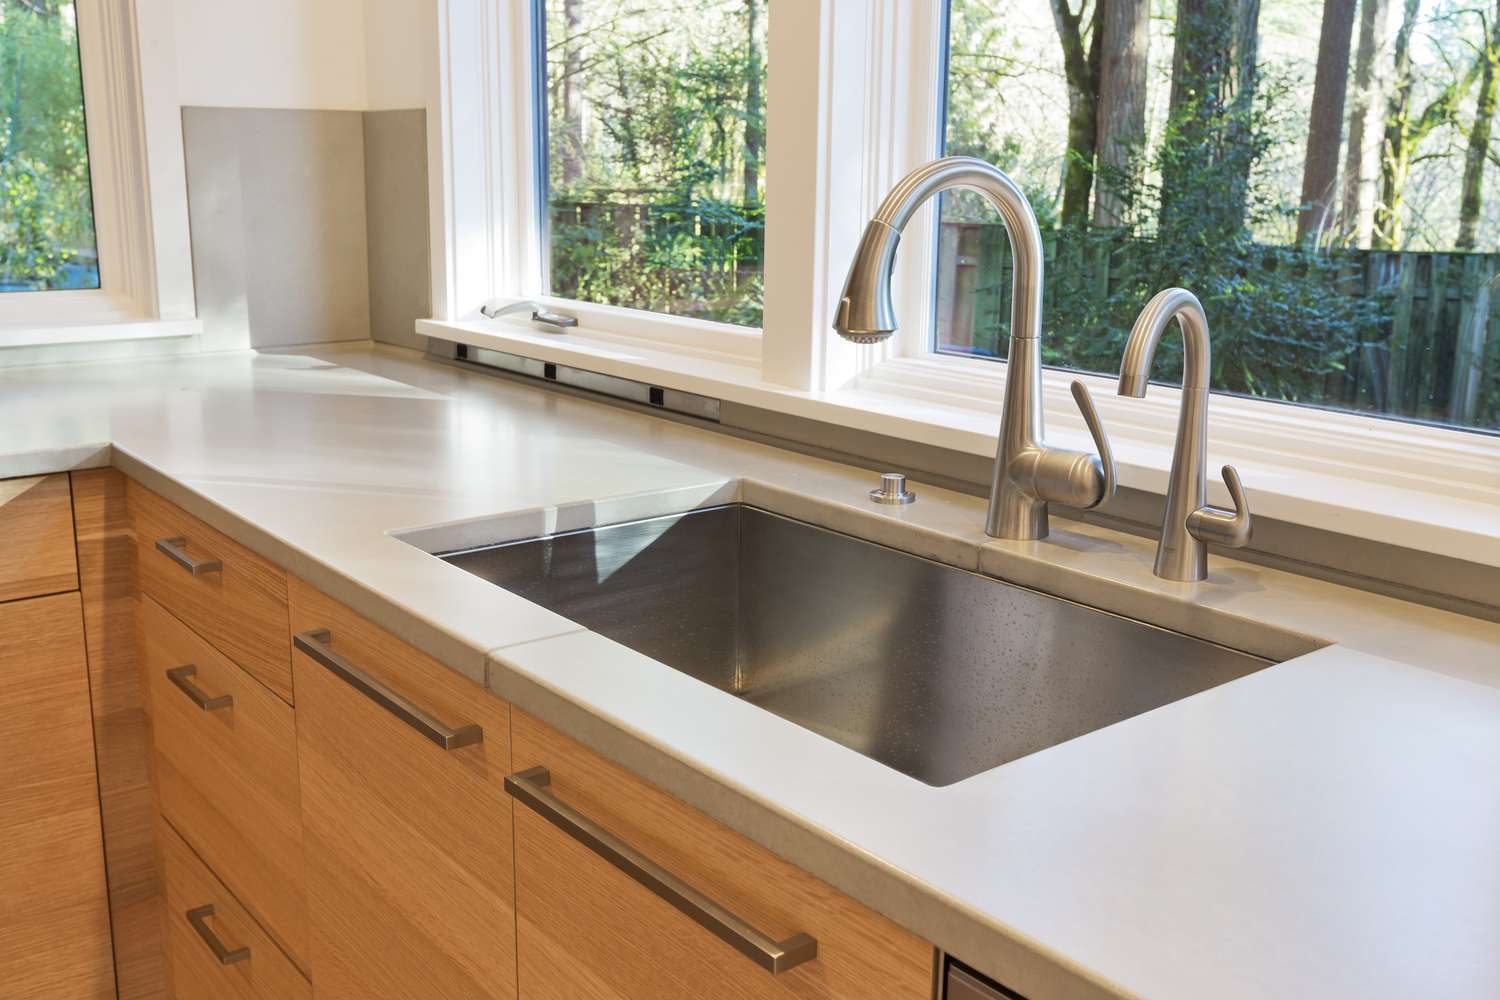 Undermount kitchen sink in a modern kitchen